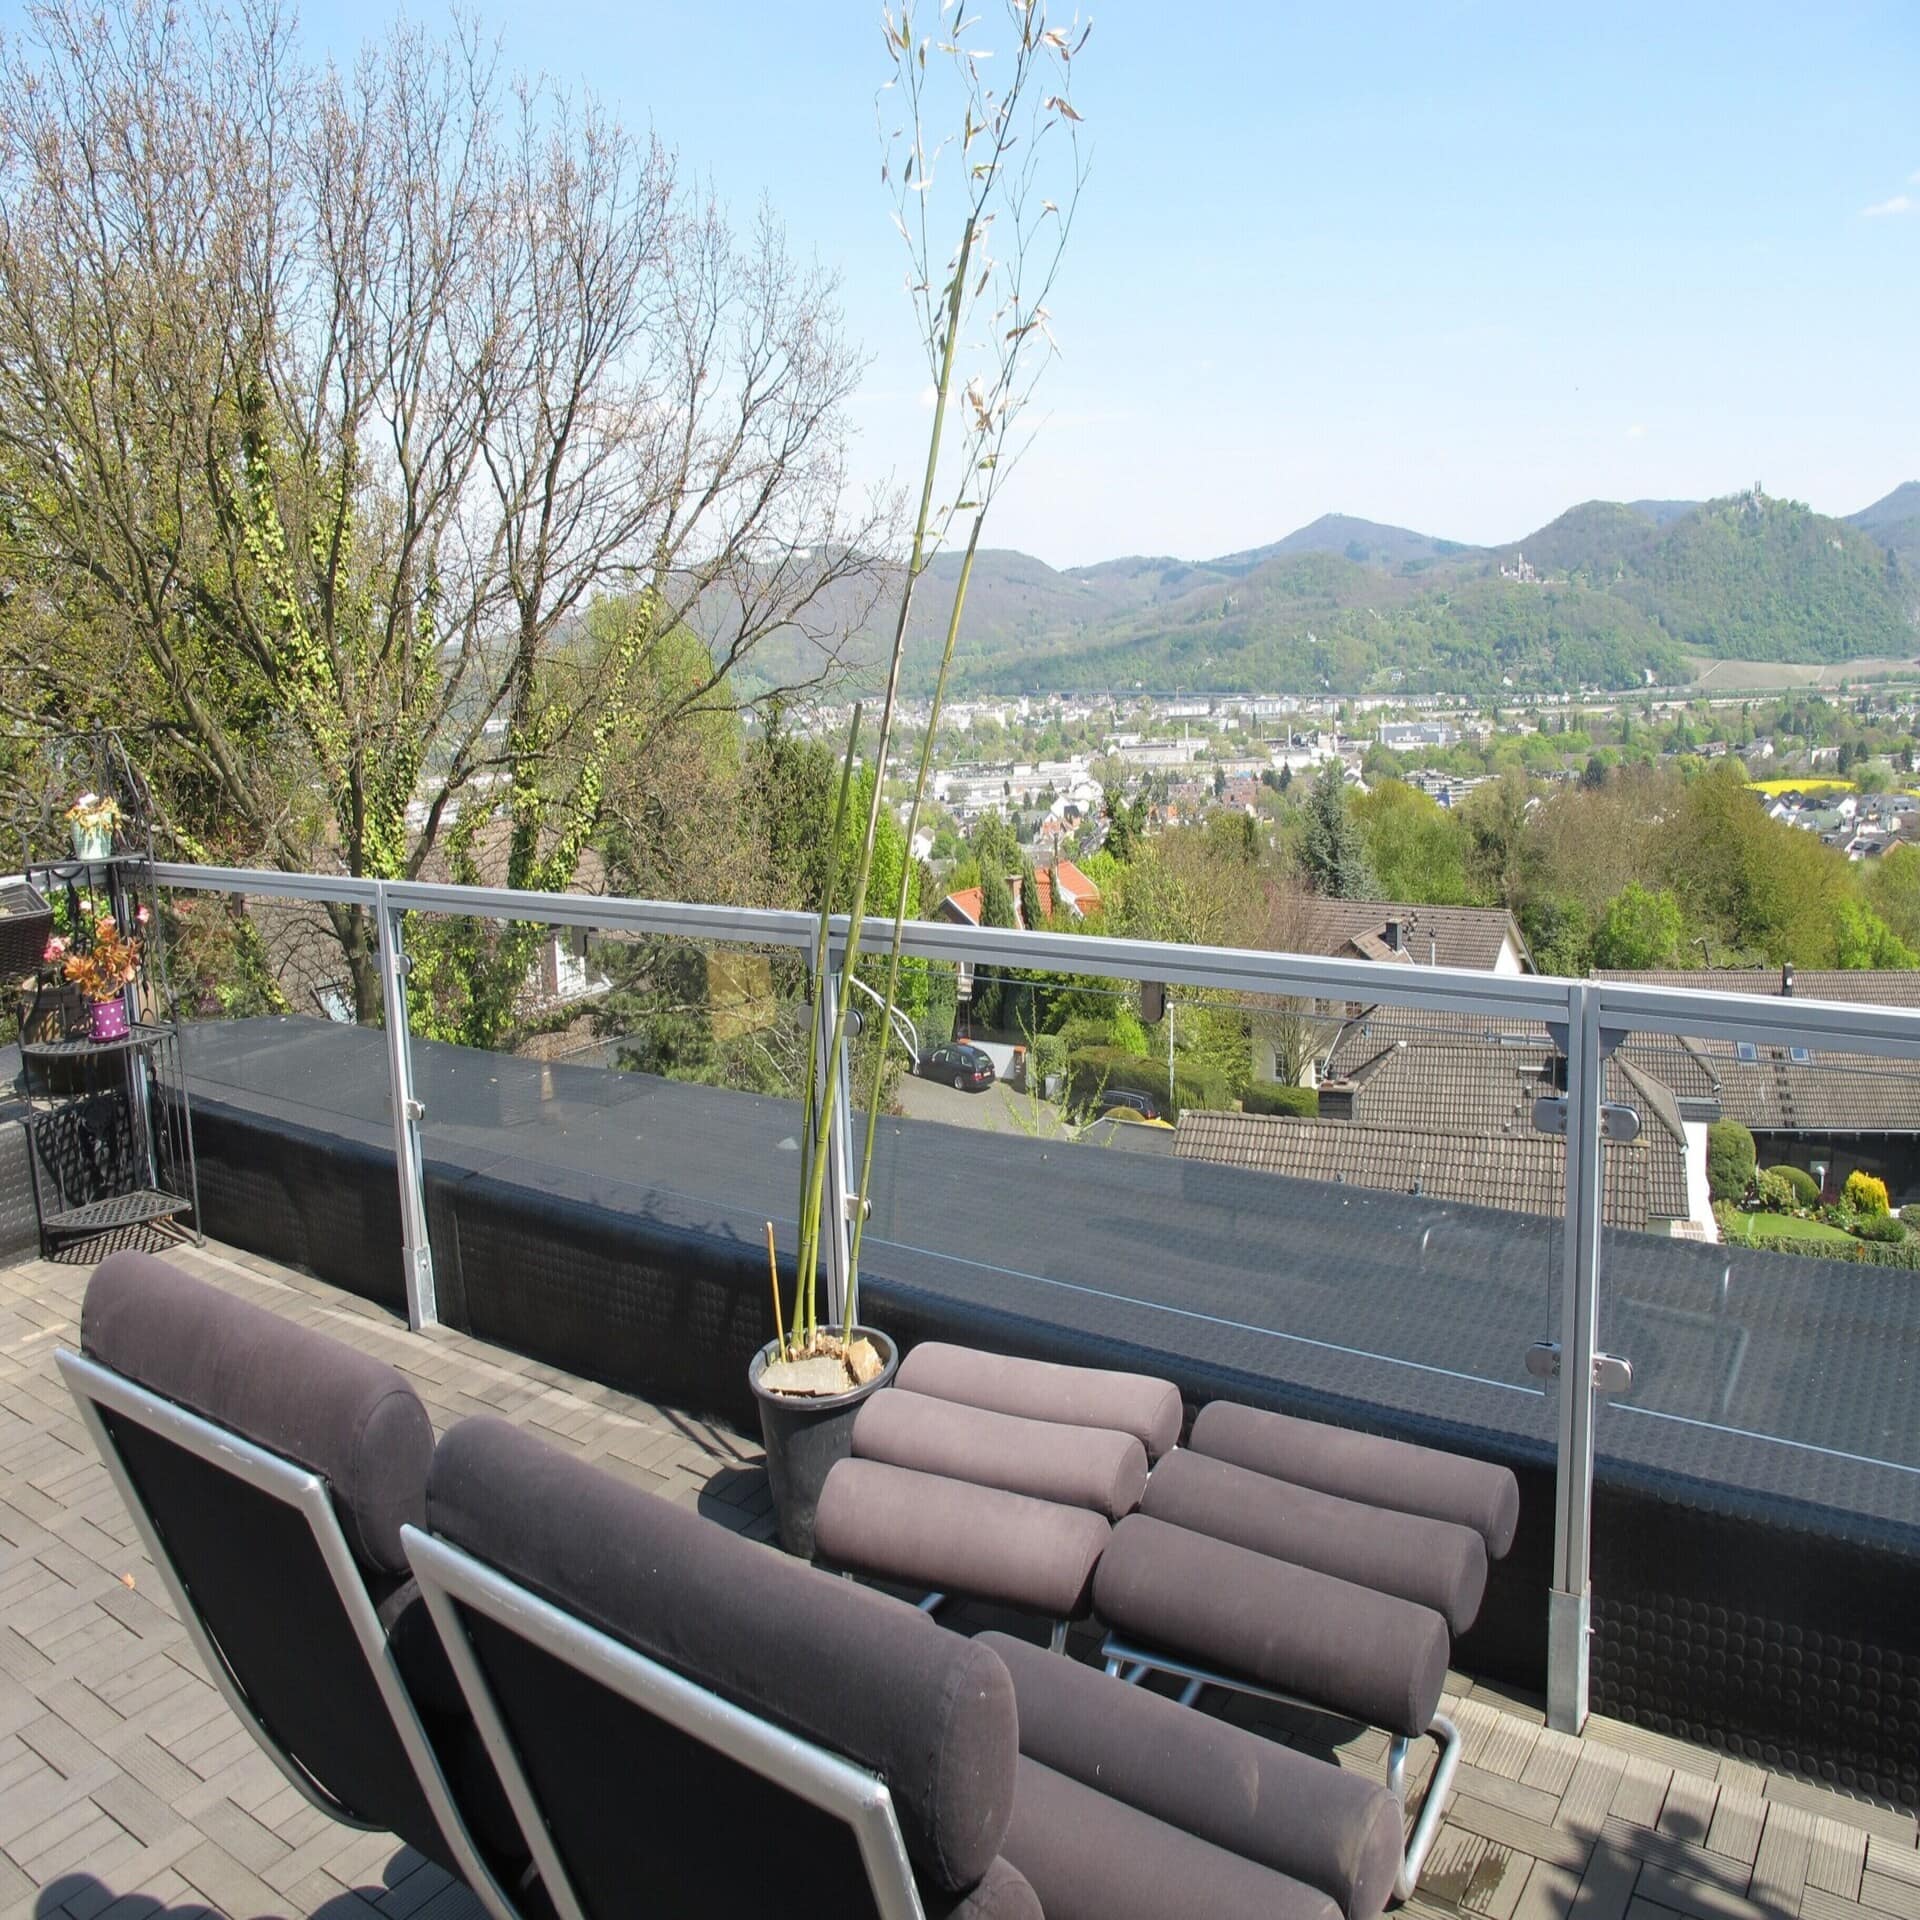 Dachterrasse mit Sitzgelegenheiten und Blick auf einen Vorort von Bonn. Die Sonne scheint.